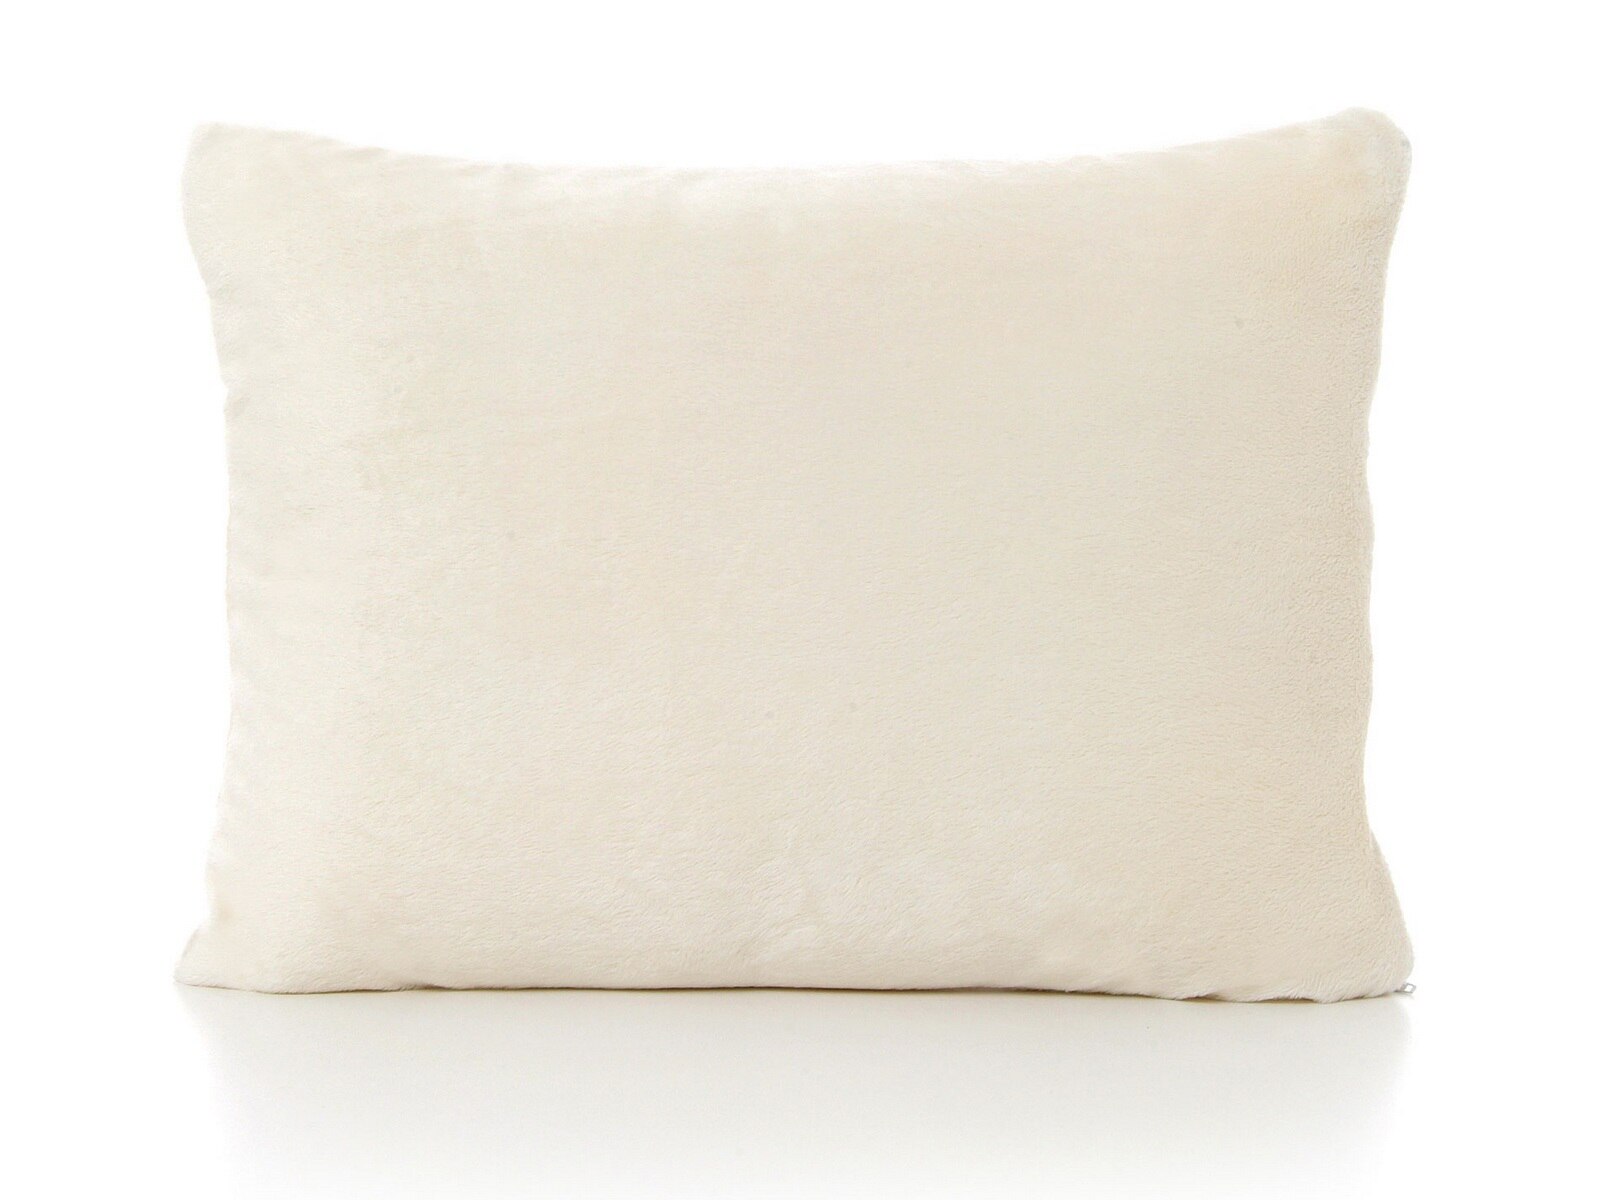 Memory Foam Toddler Pillow